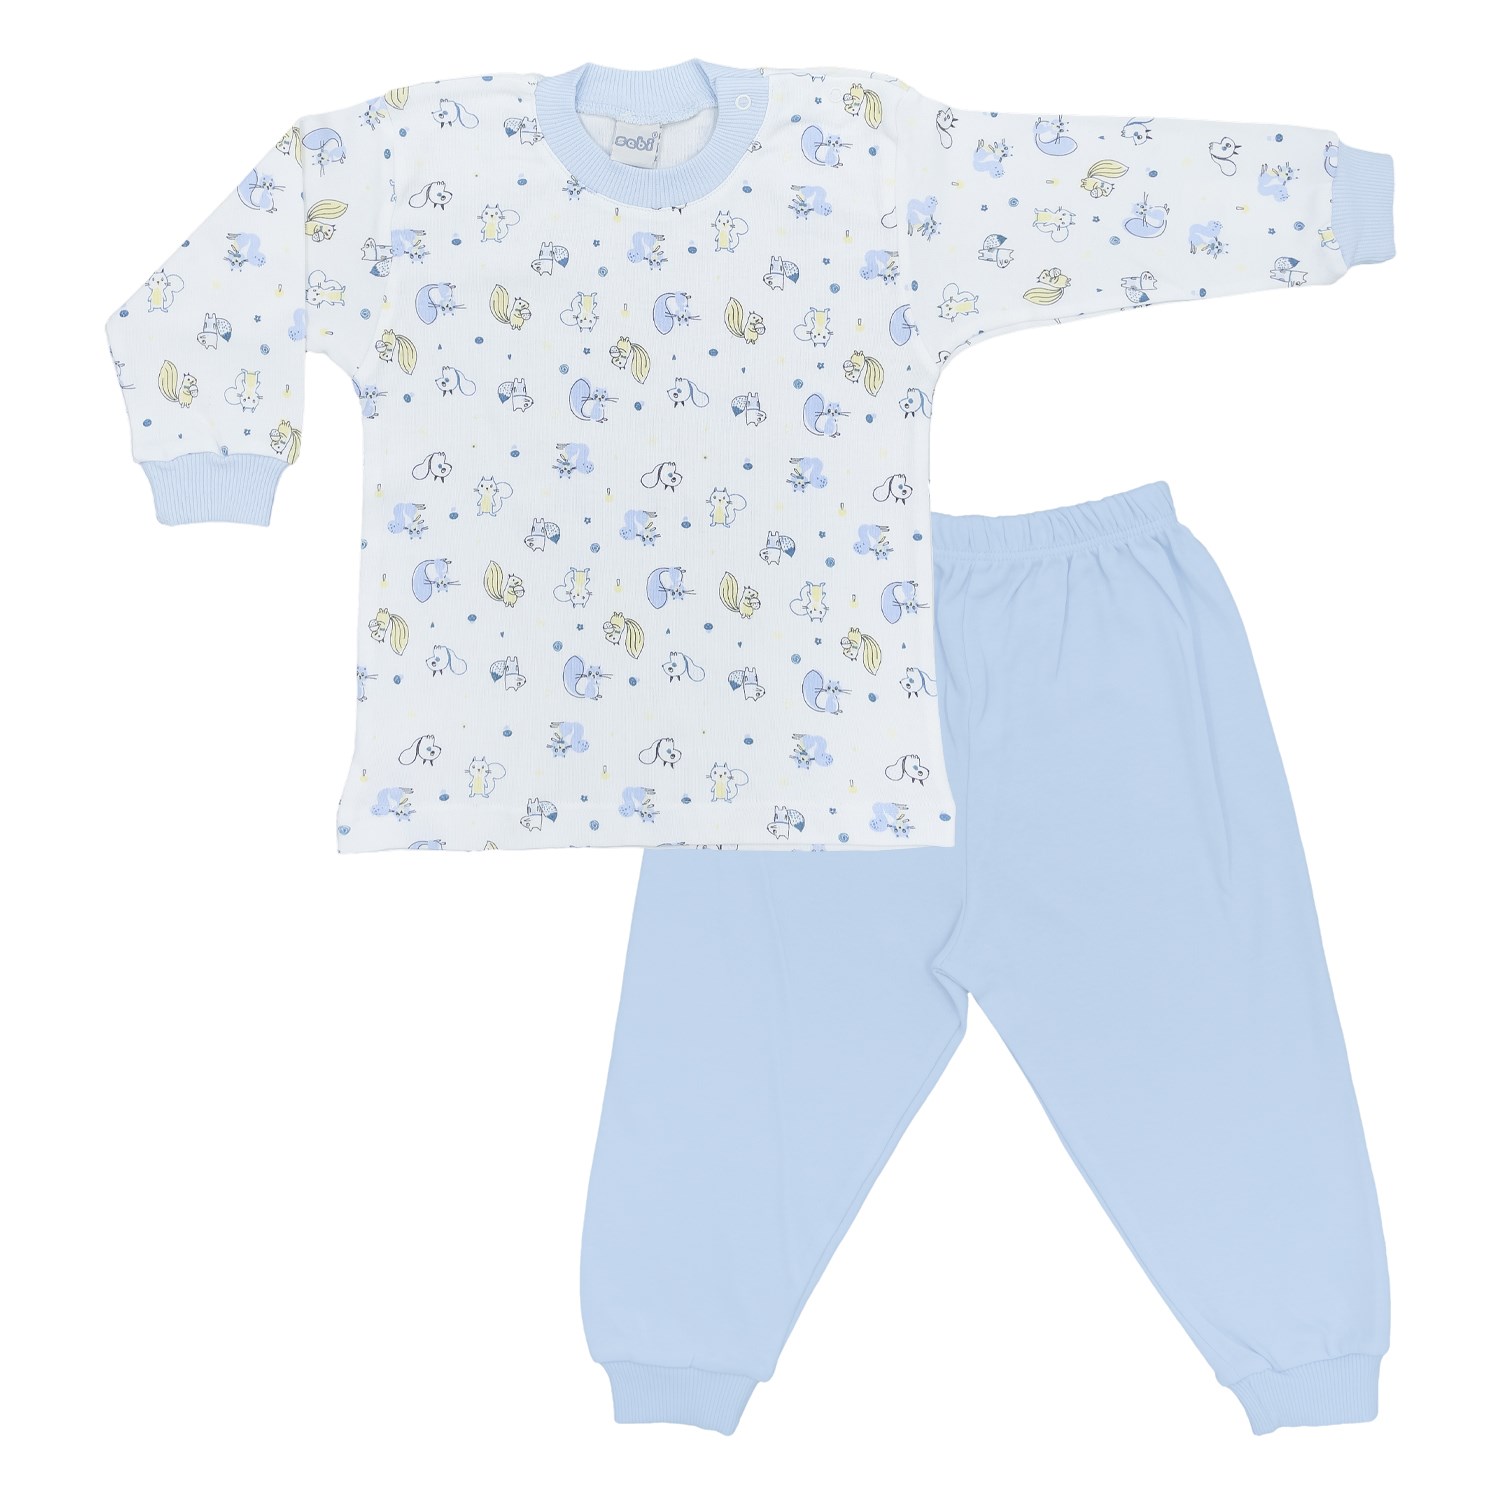 Sebi Bebe Sincap Baskılı Bebek Pijama Takımı 2416 Mavi